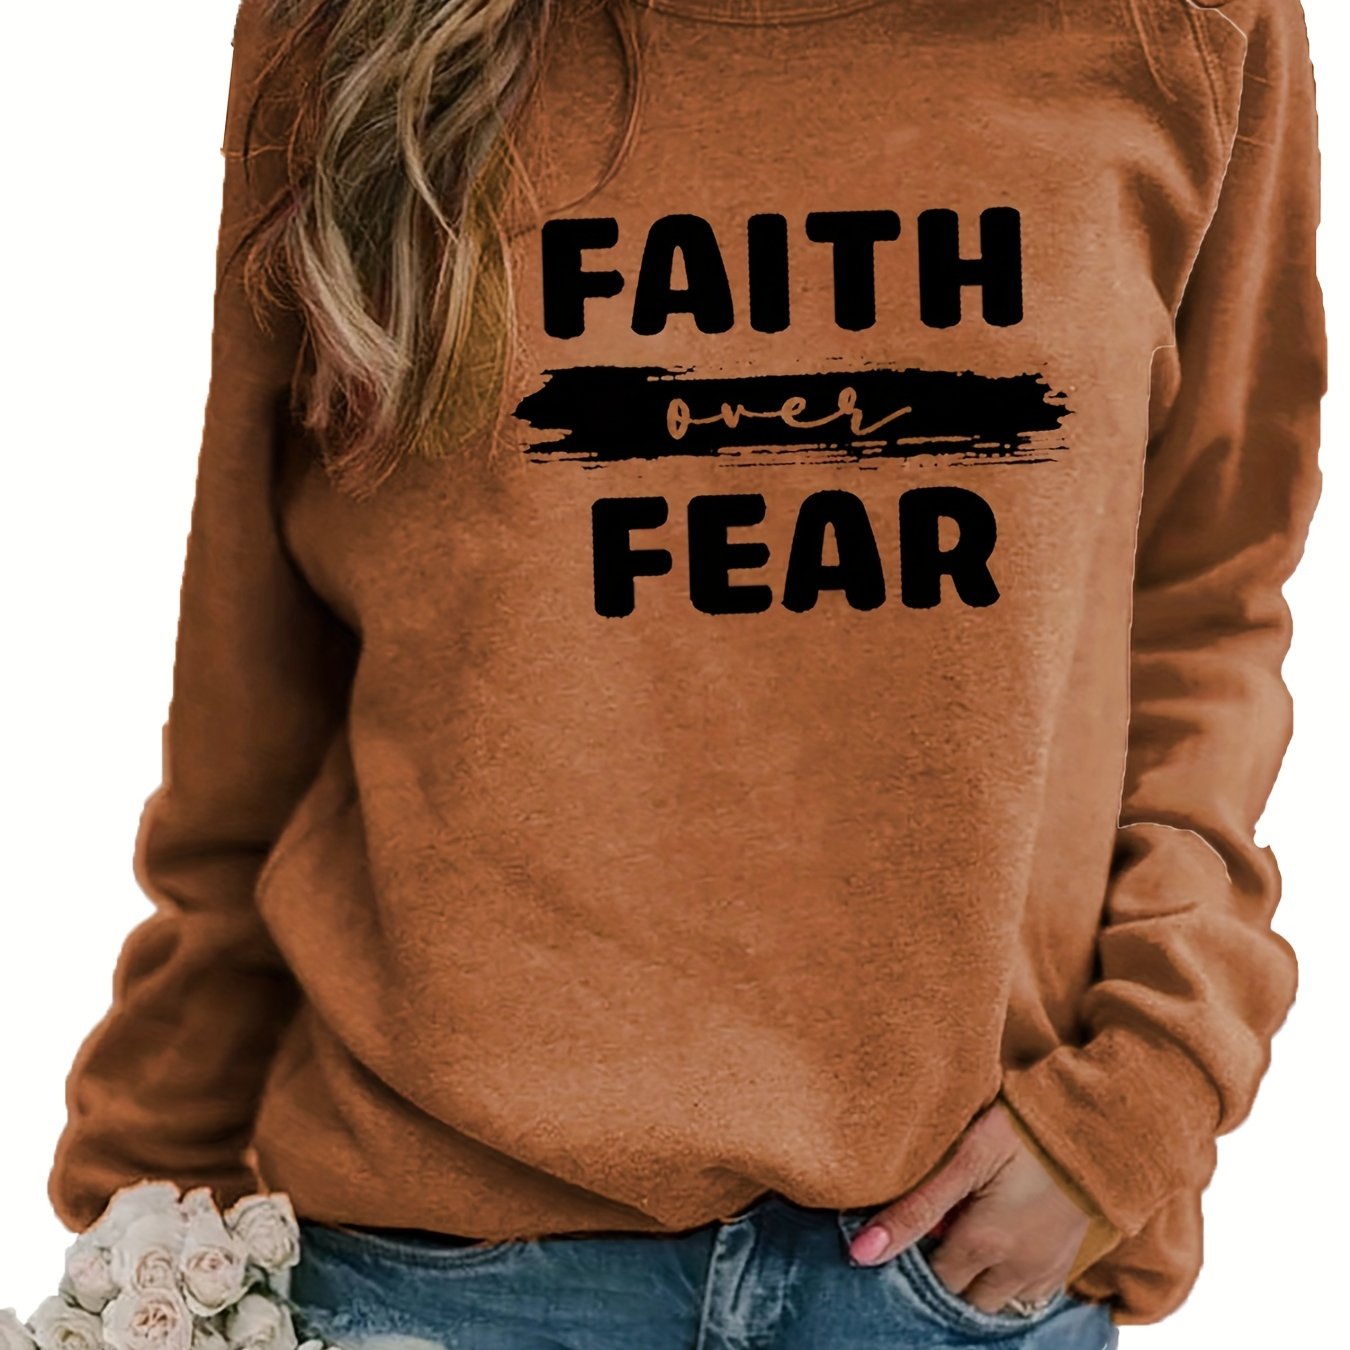 Faith Over Fear Women's Christian Pullover Sweatshirt claimedbygoddesigns